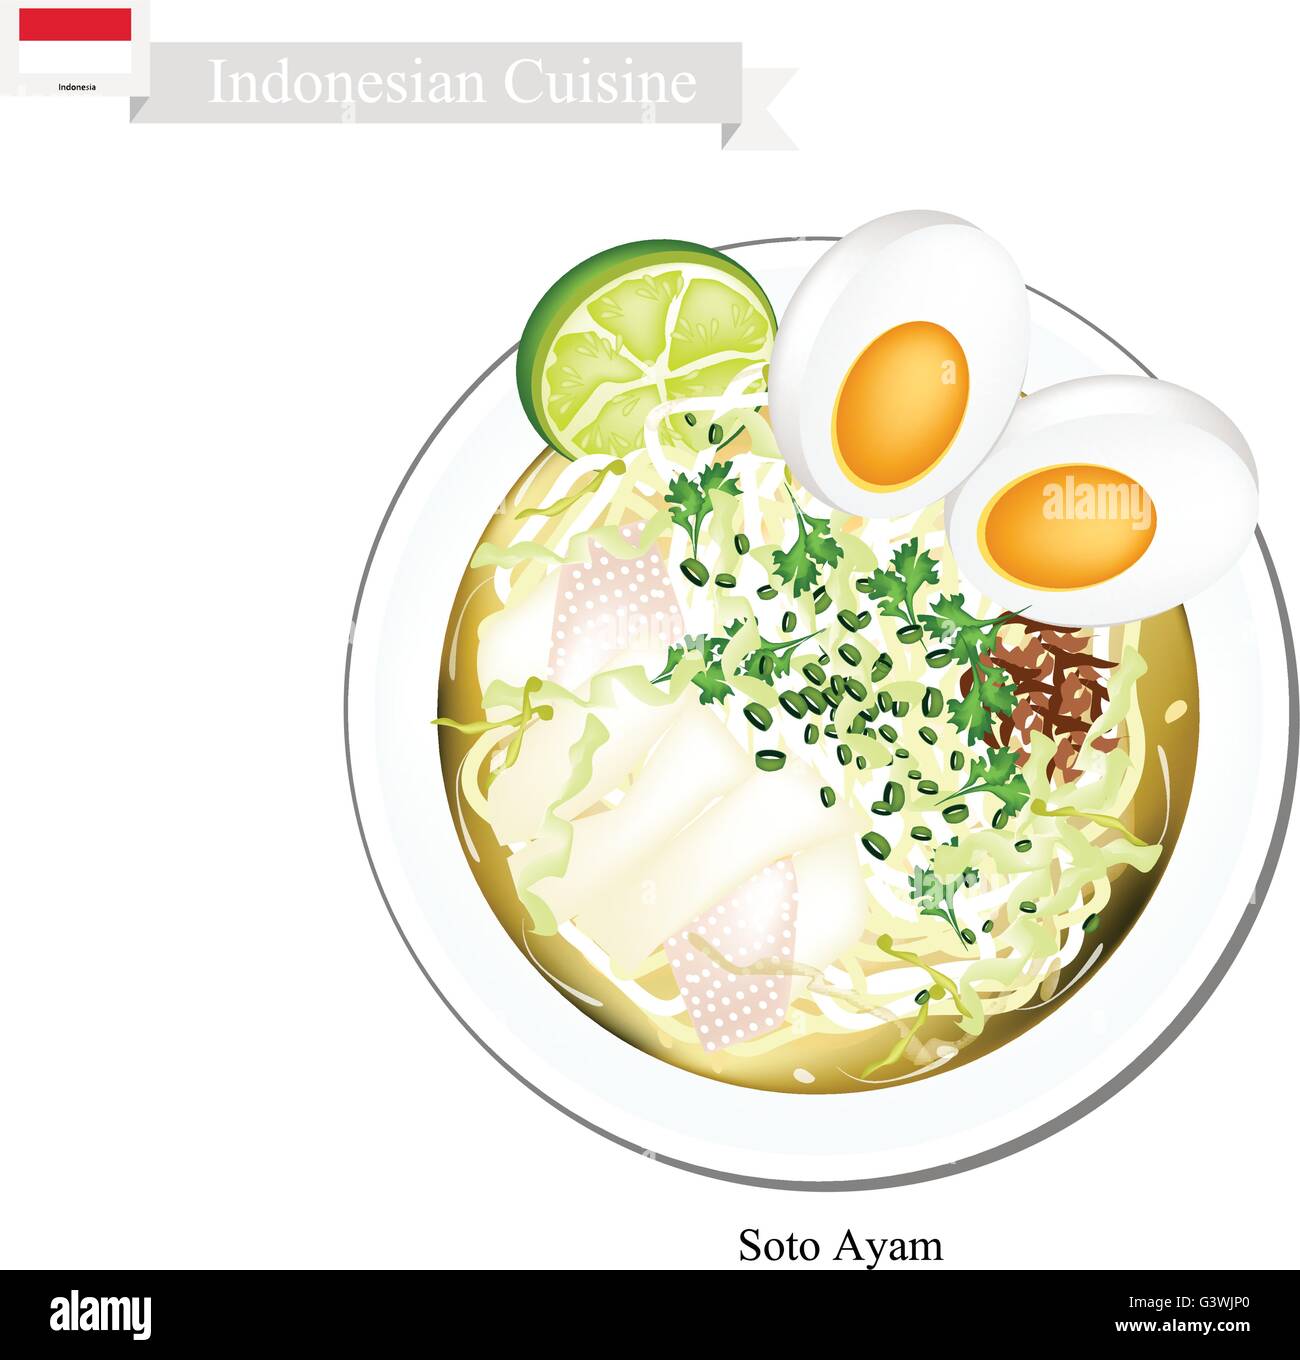 La cuisine indonésienne, soto ayam ou nouilles de riz traditionnel dans la soupe épicée au poulet et oeuf dur. L'un des plats les plus populaires Illustration de Vecteur